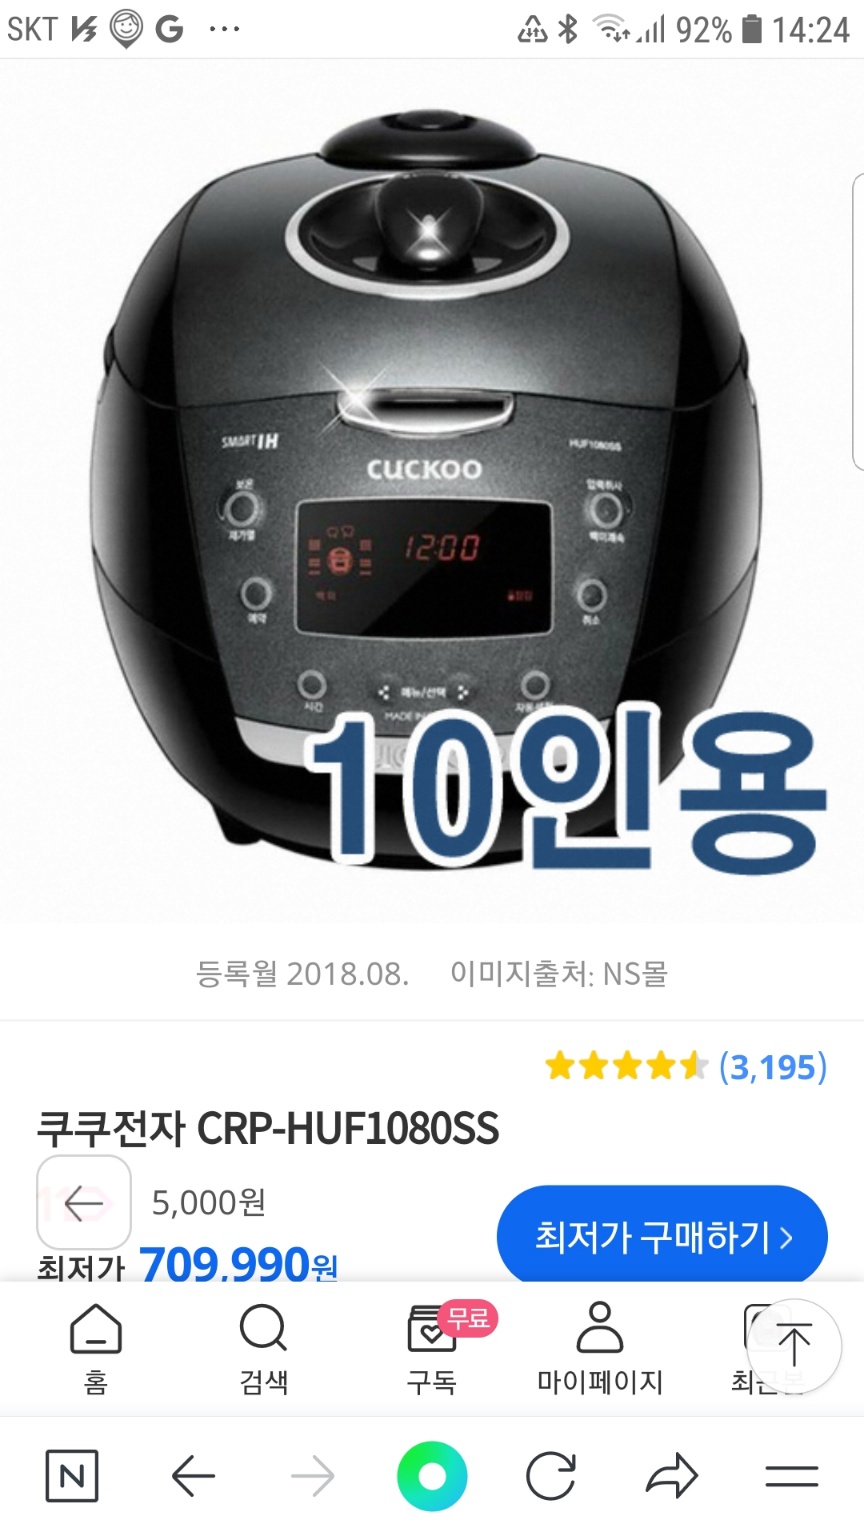 쿠쿠 10인용 압력밥솥 CRP-HUF1080SS 상태